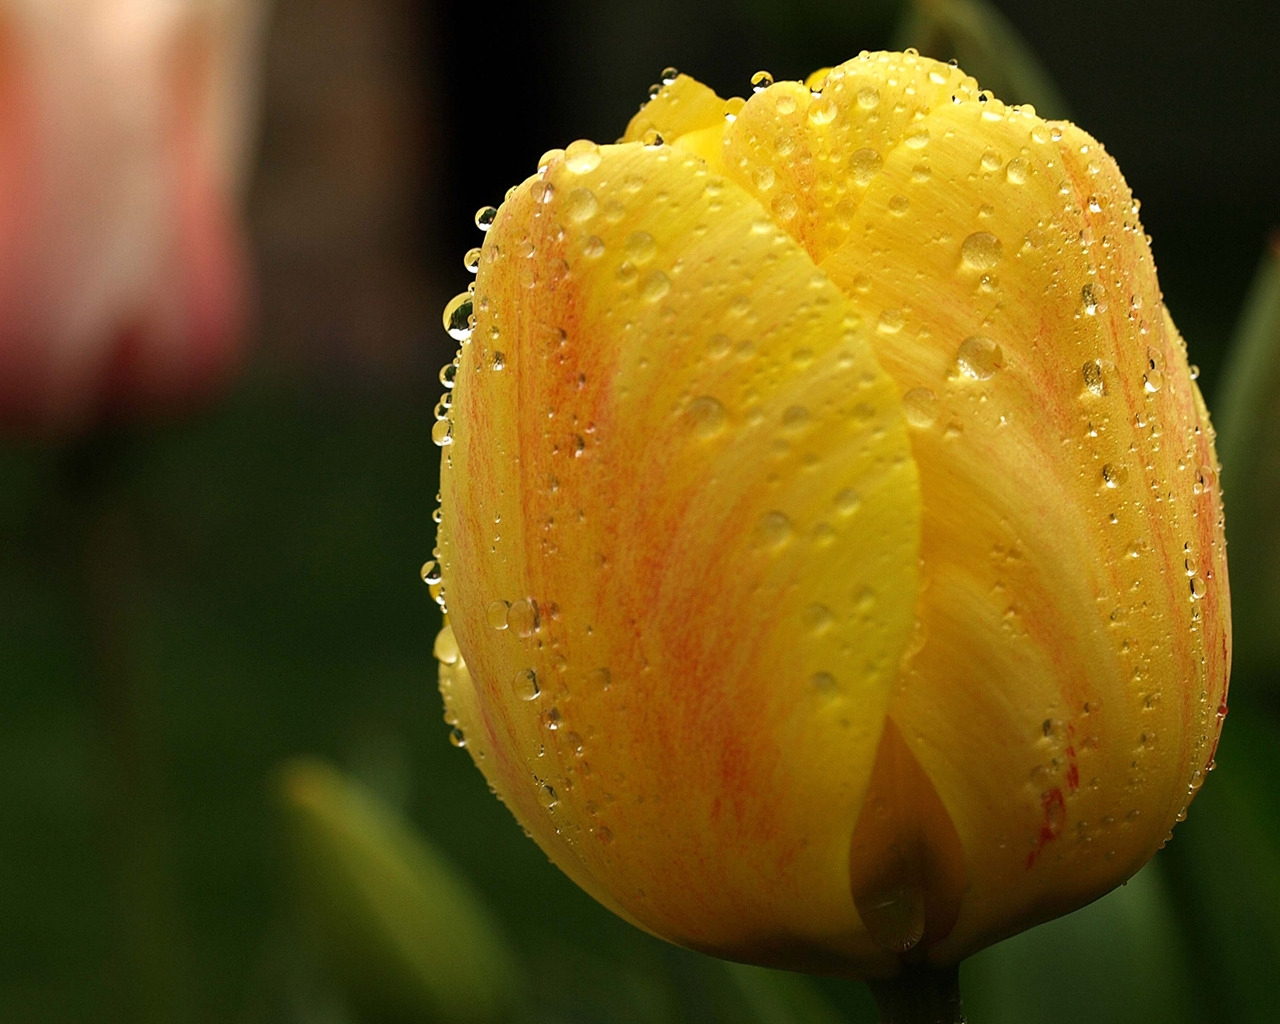 Orange Tulip Close Up for 1280 x 1024 resolution